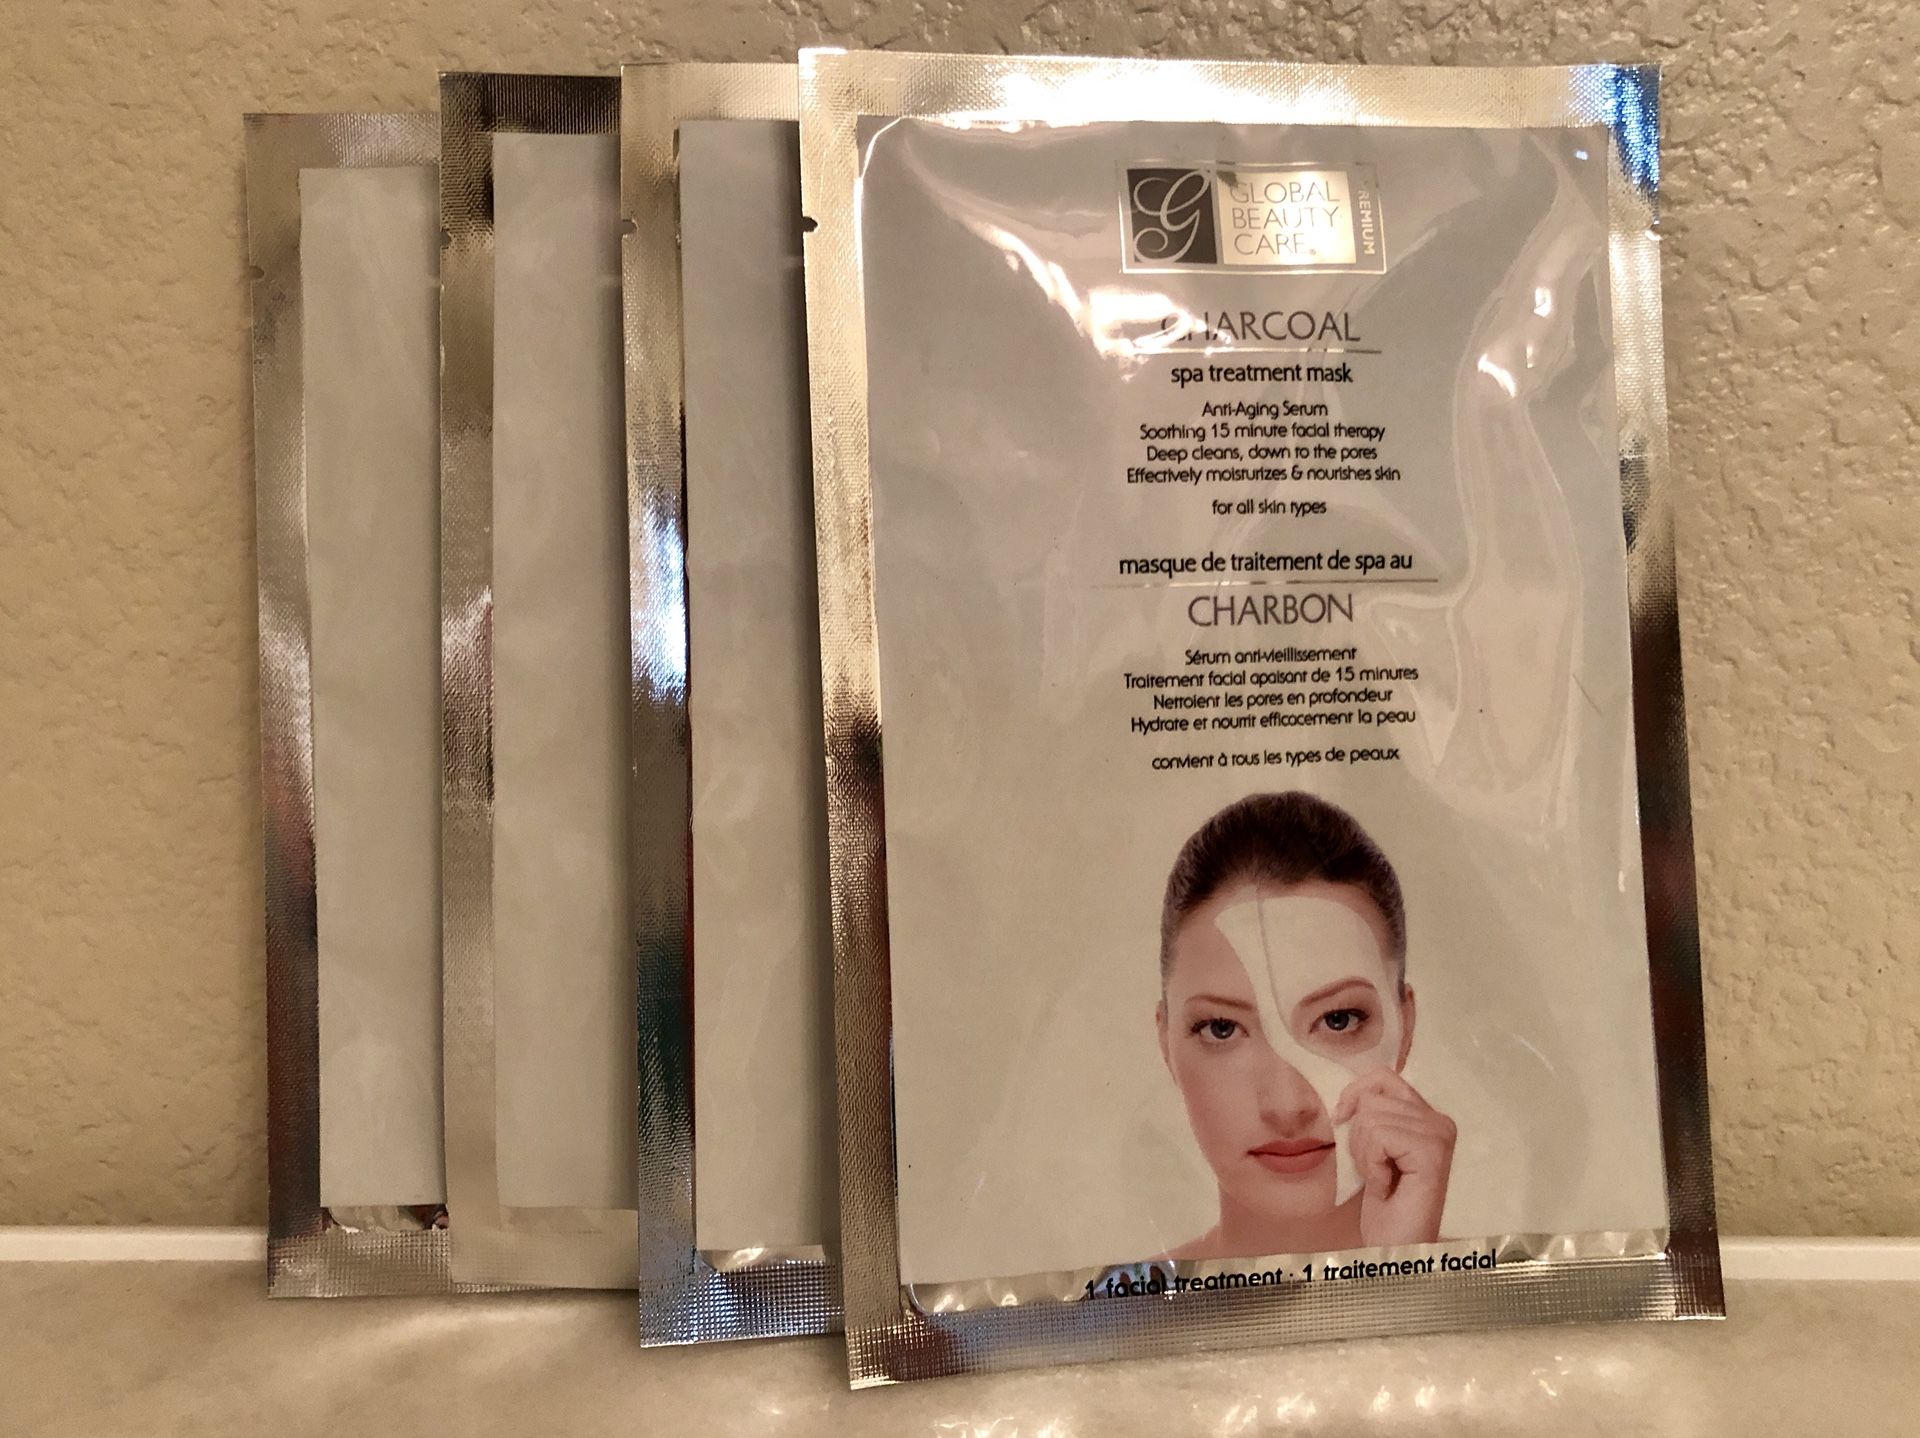 Global Beauty Care Charcoal Spa Treatment Masks